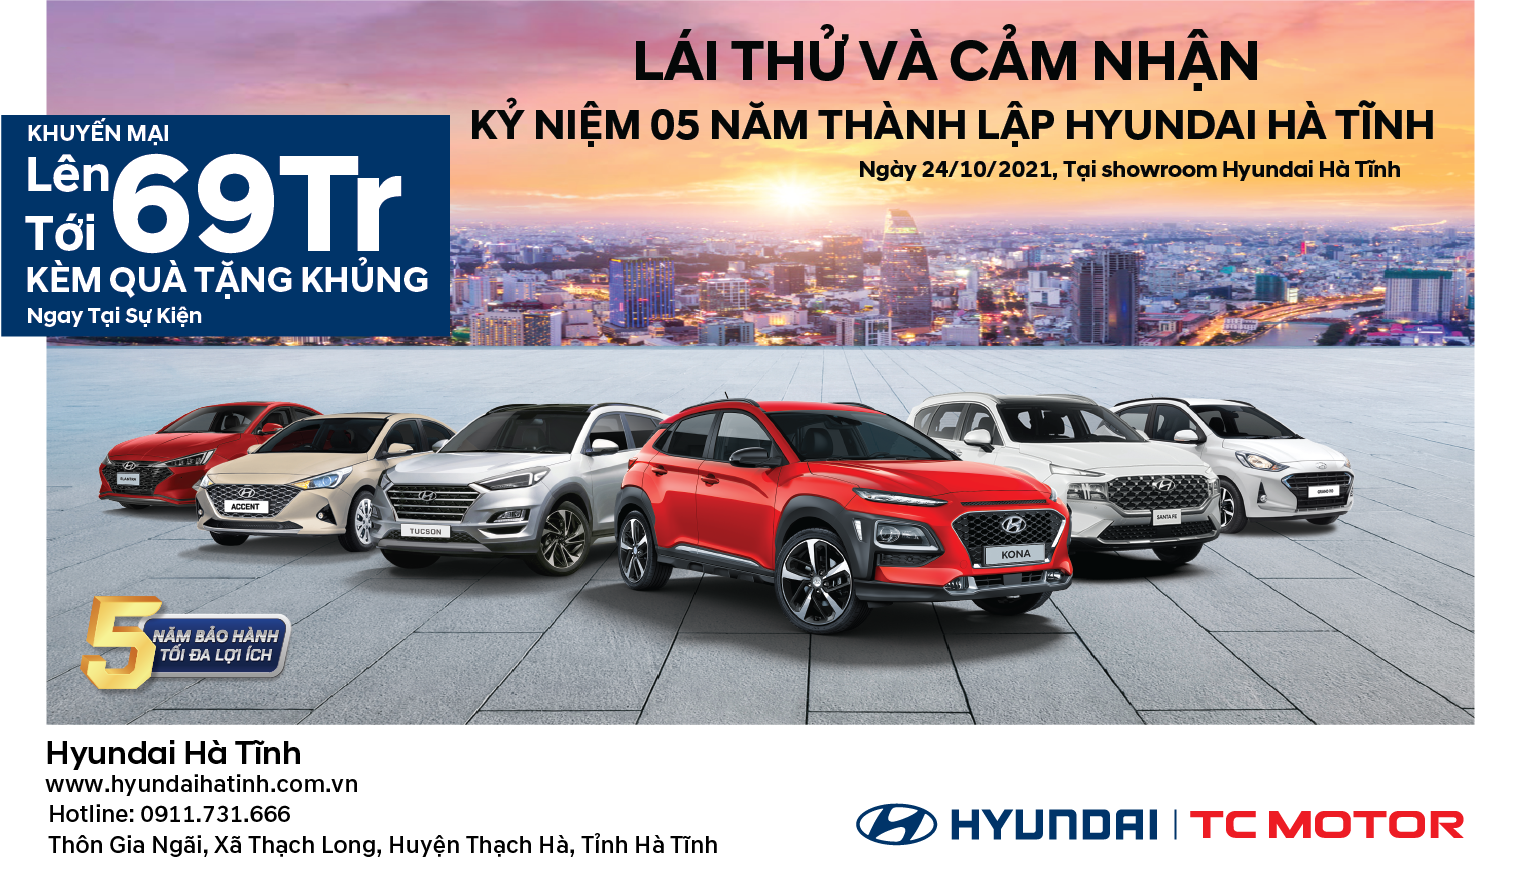 Chương Trình Lái Thử Và Cảm Nhận Kỷ Niệm 5 Năm Thành Lập Hyundai Hà Tĩnh